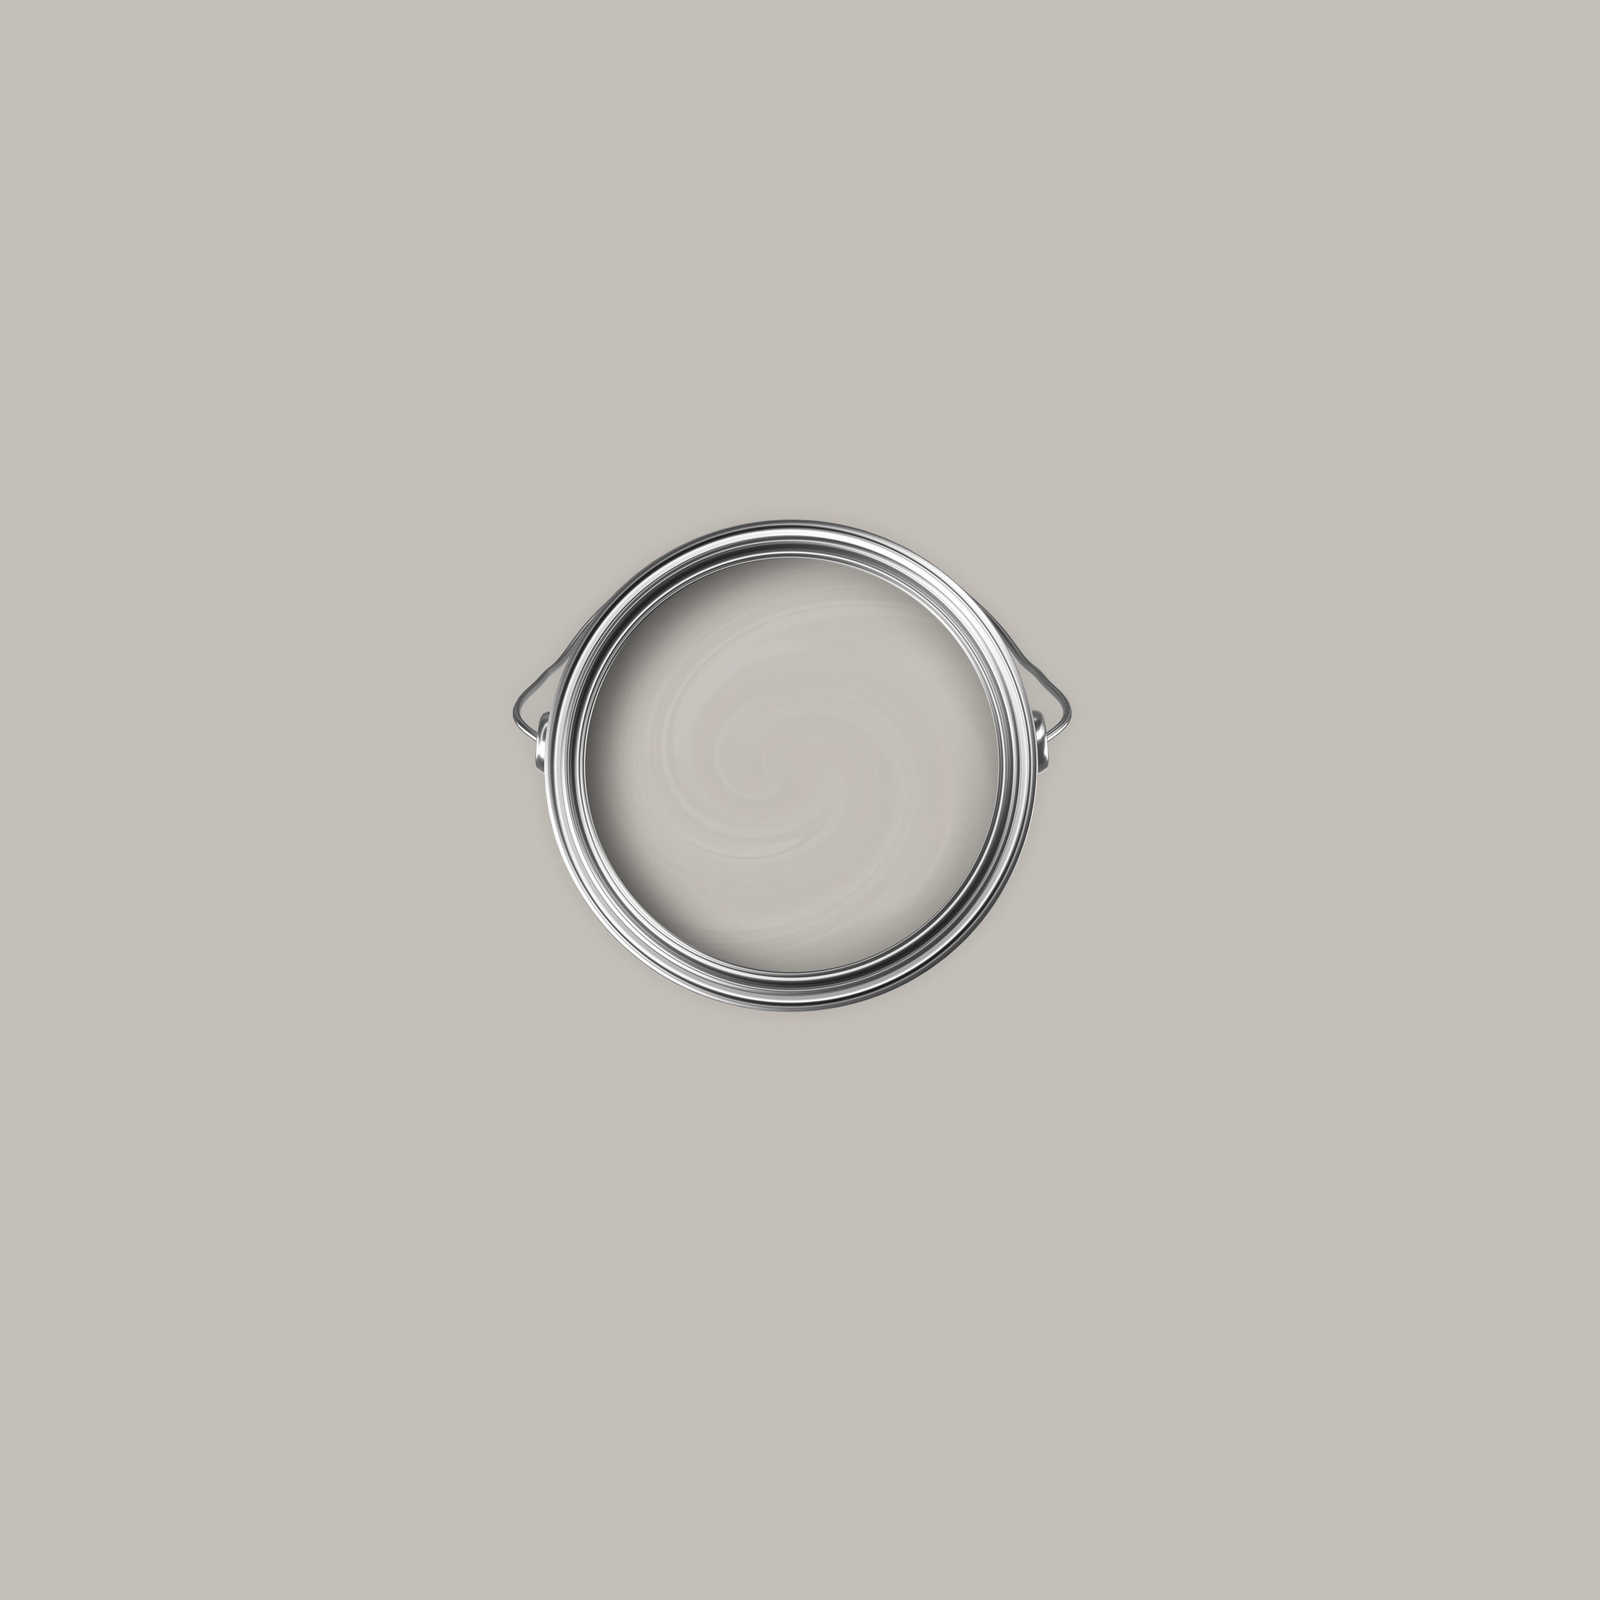             Premium Muurverf zacht zijdegrijs »Creamy Grey« NW111 – 1 liter
        